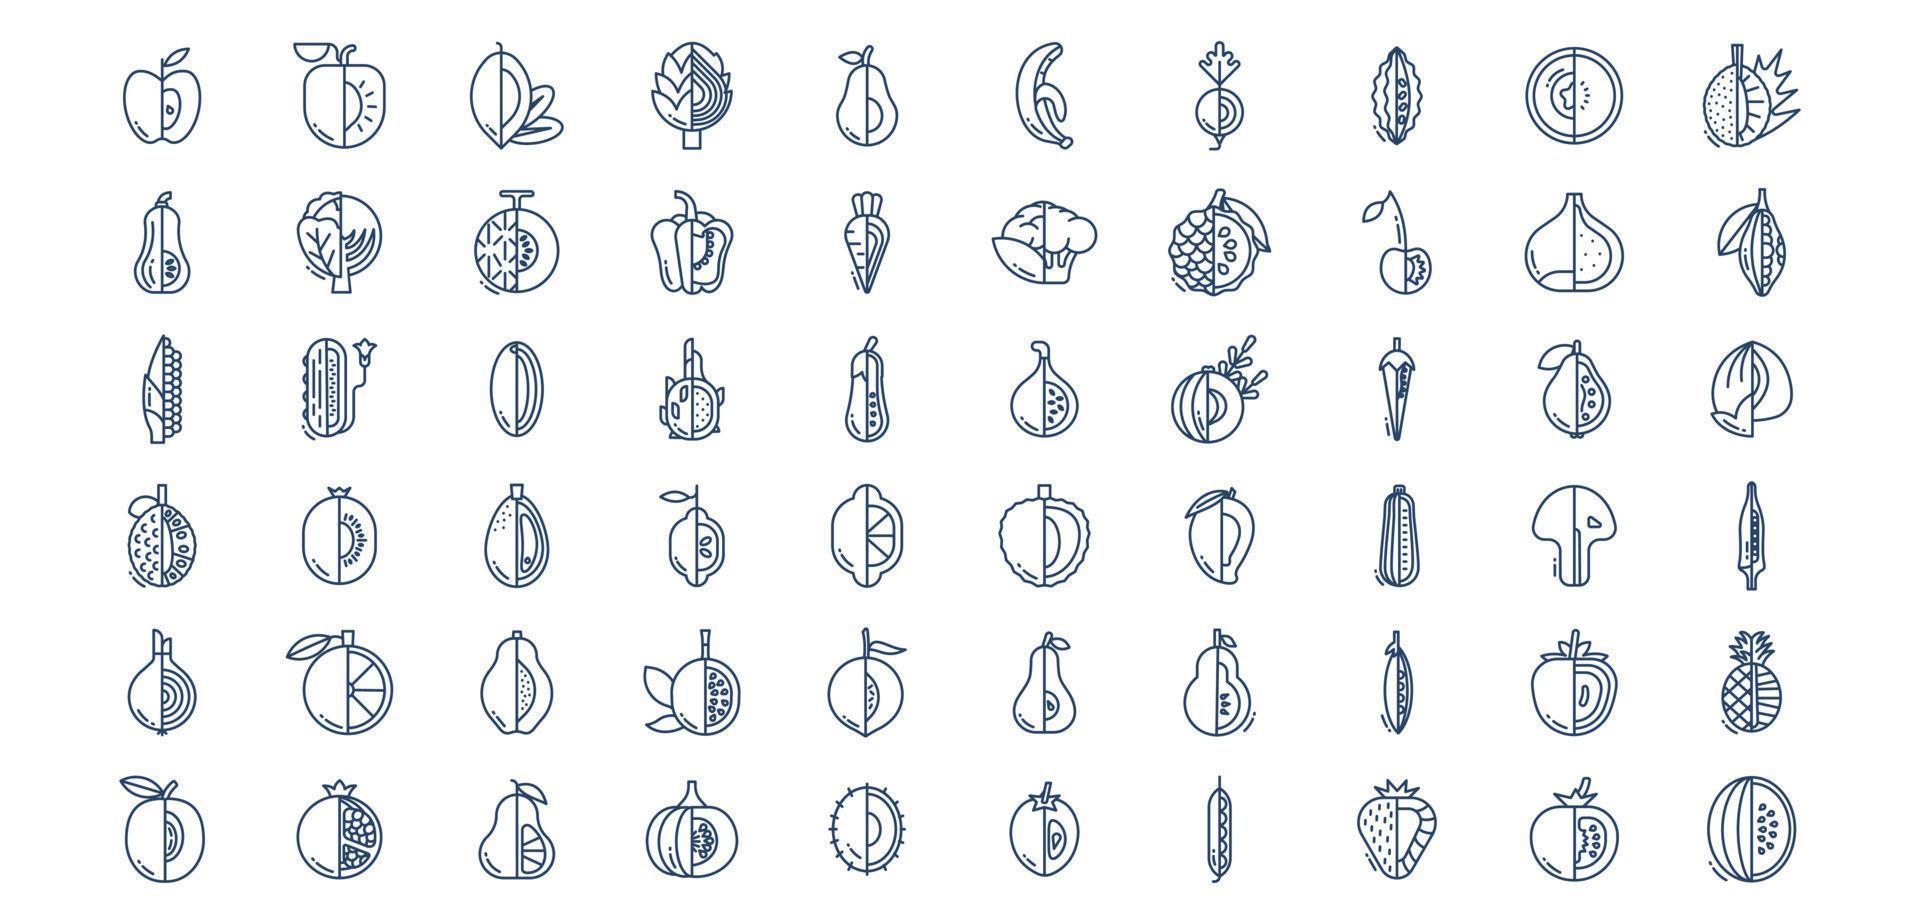 verzameling van pictogrammen verwant naar fruit en groenten, inclusief pictogrammen Leuk vinden ananas, artisjok, kers, erwten en meer. vector illustraties, pixel perfect reeks